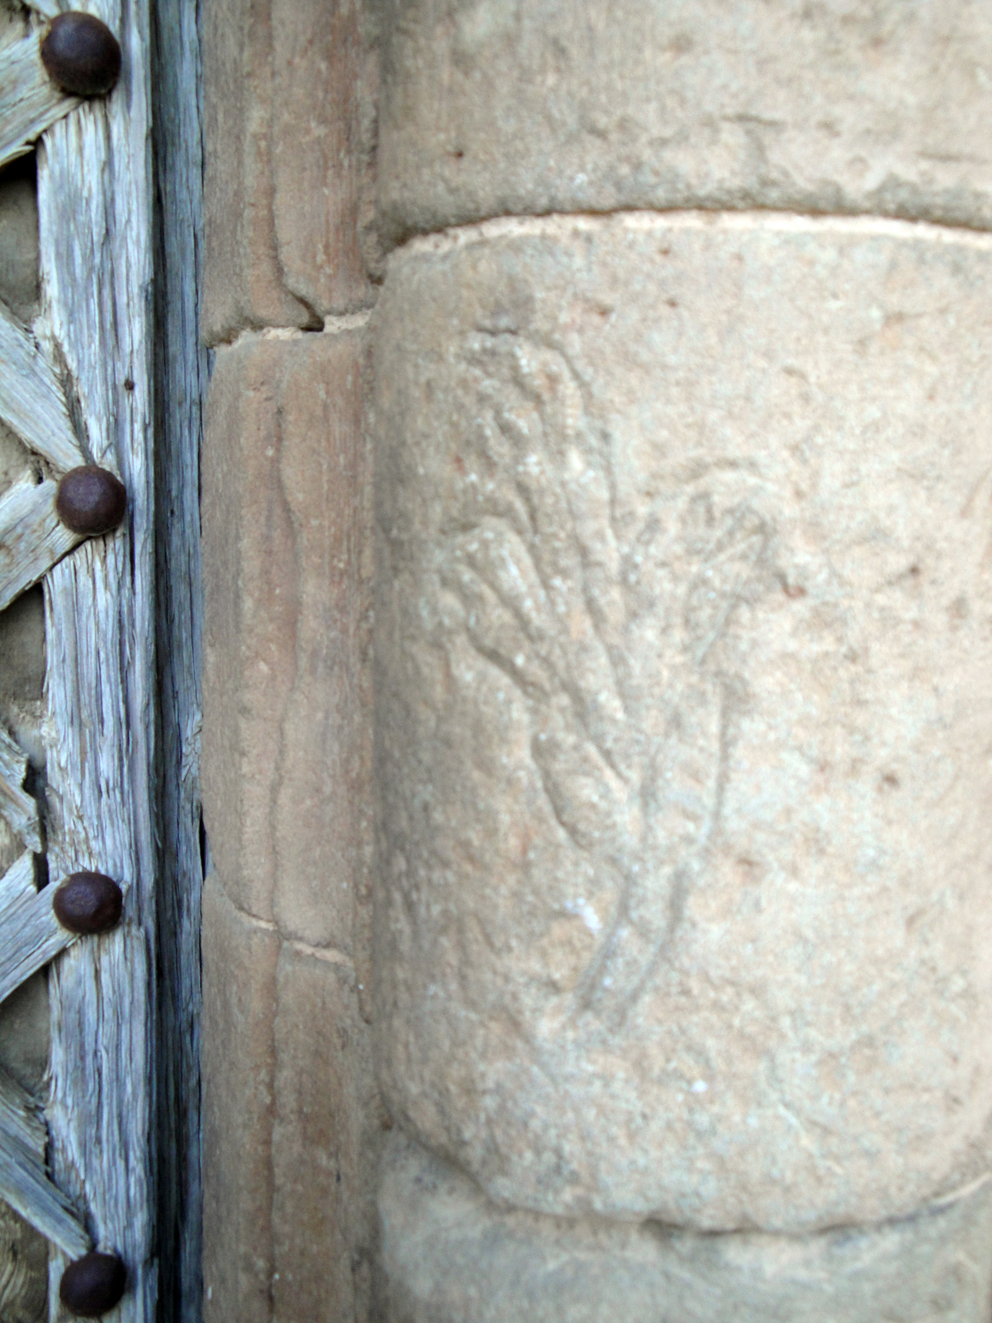 07.05.2009 Grafit de motiu floral en un dels fusts de la porta d'ingrés al temple. Segurament realitzat per algun fidel o pelegrí mentre pernoctaria en el seu portal                      Agramunt. Santa Maria de. A la Noguera -  Jordi Bibià